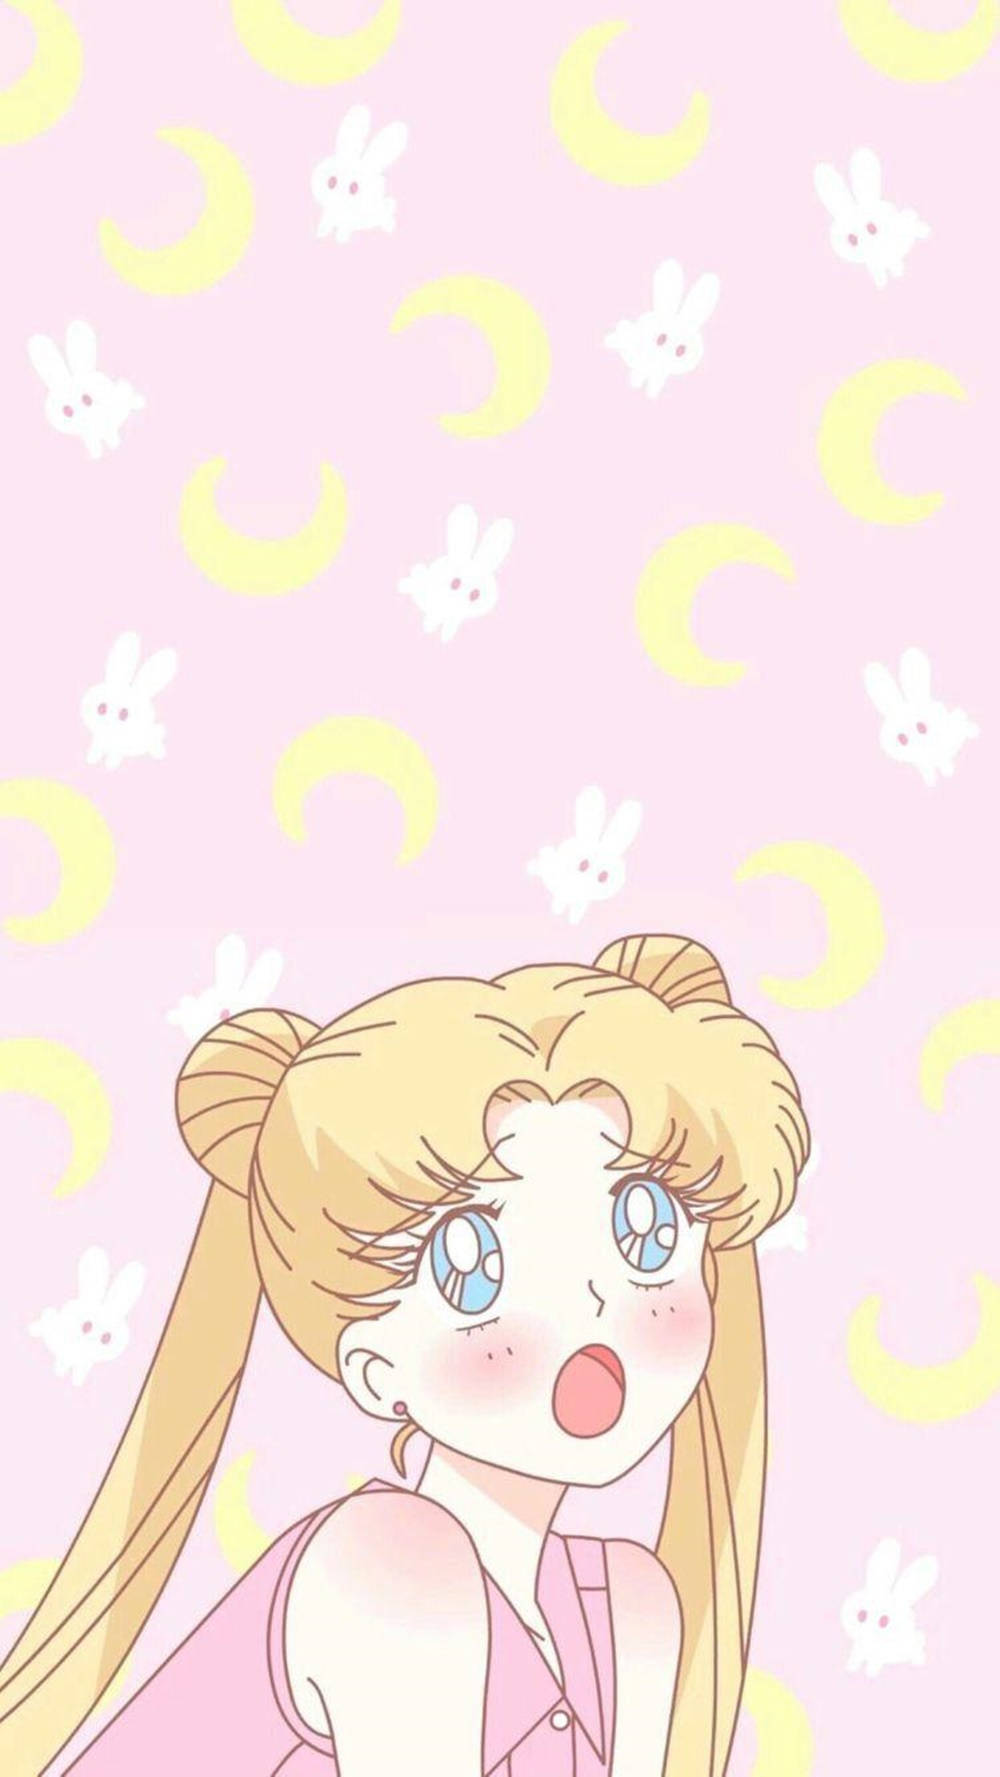 Sfondosailor Moon - Sfondo Sailor Moon Sfondo